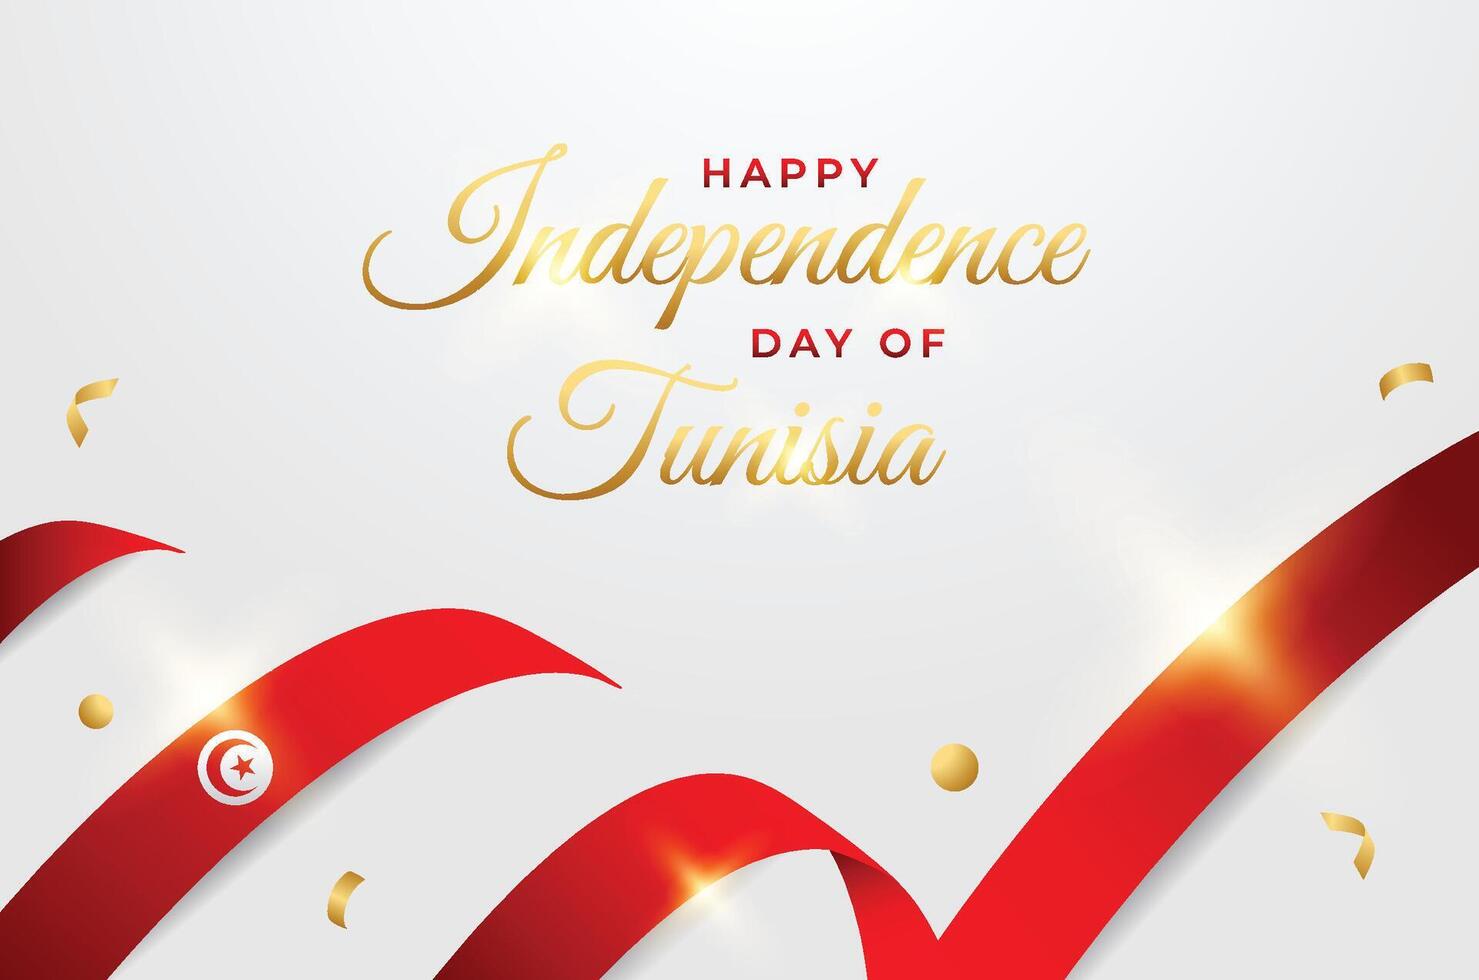 Túnez independencia día diseño ilustración colección vector